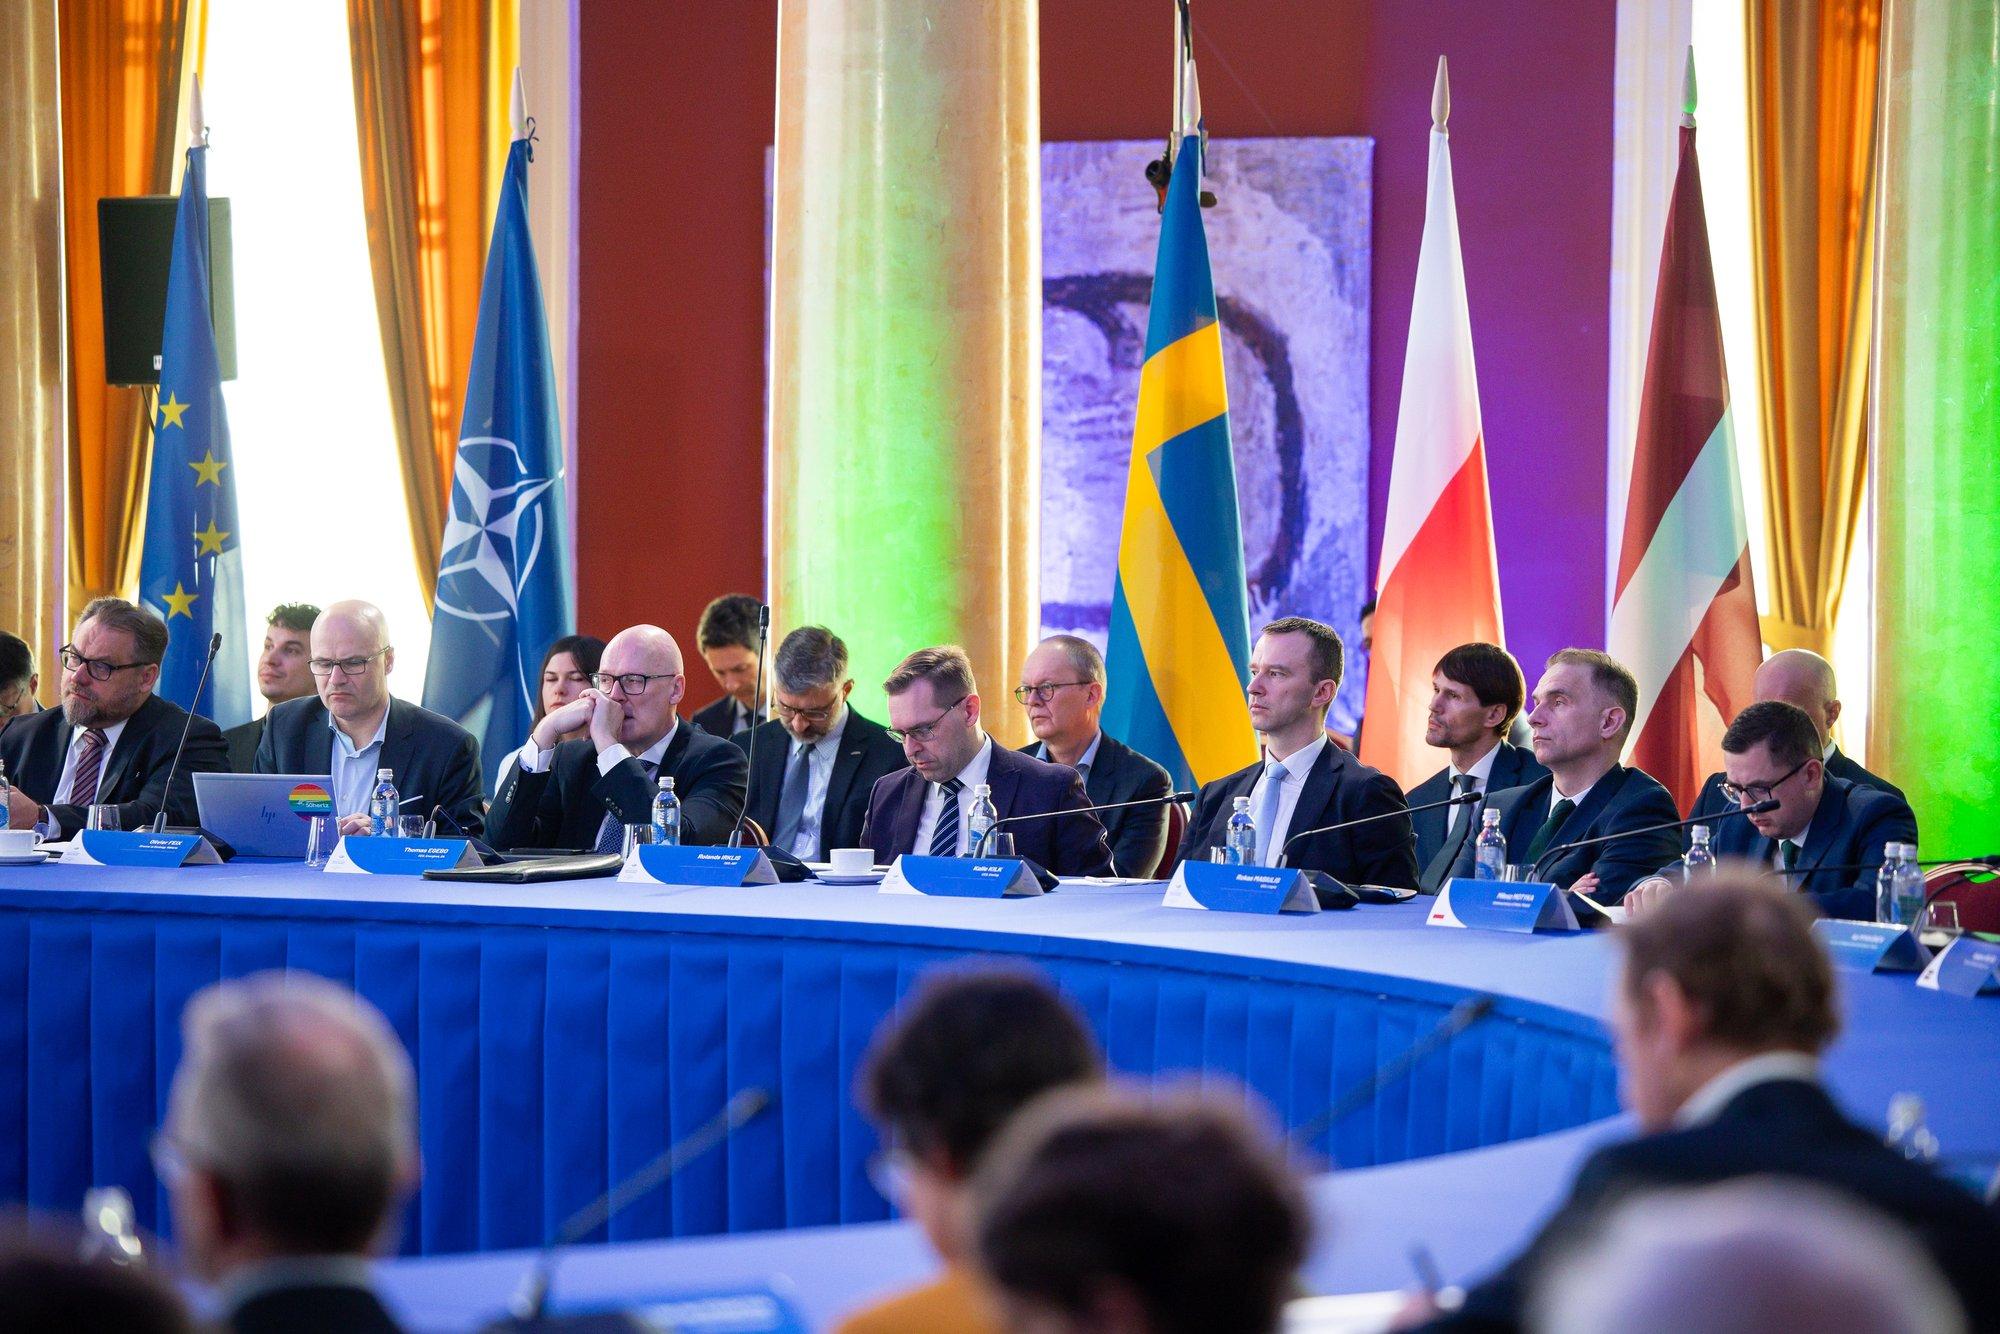 Aštuonios valstybės Vilniuje sutarė bendradarbiauti stiprinant energetinę infrastruktūrą Baltijos jūroje